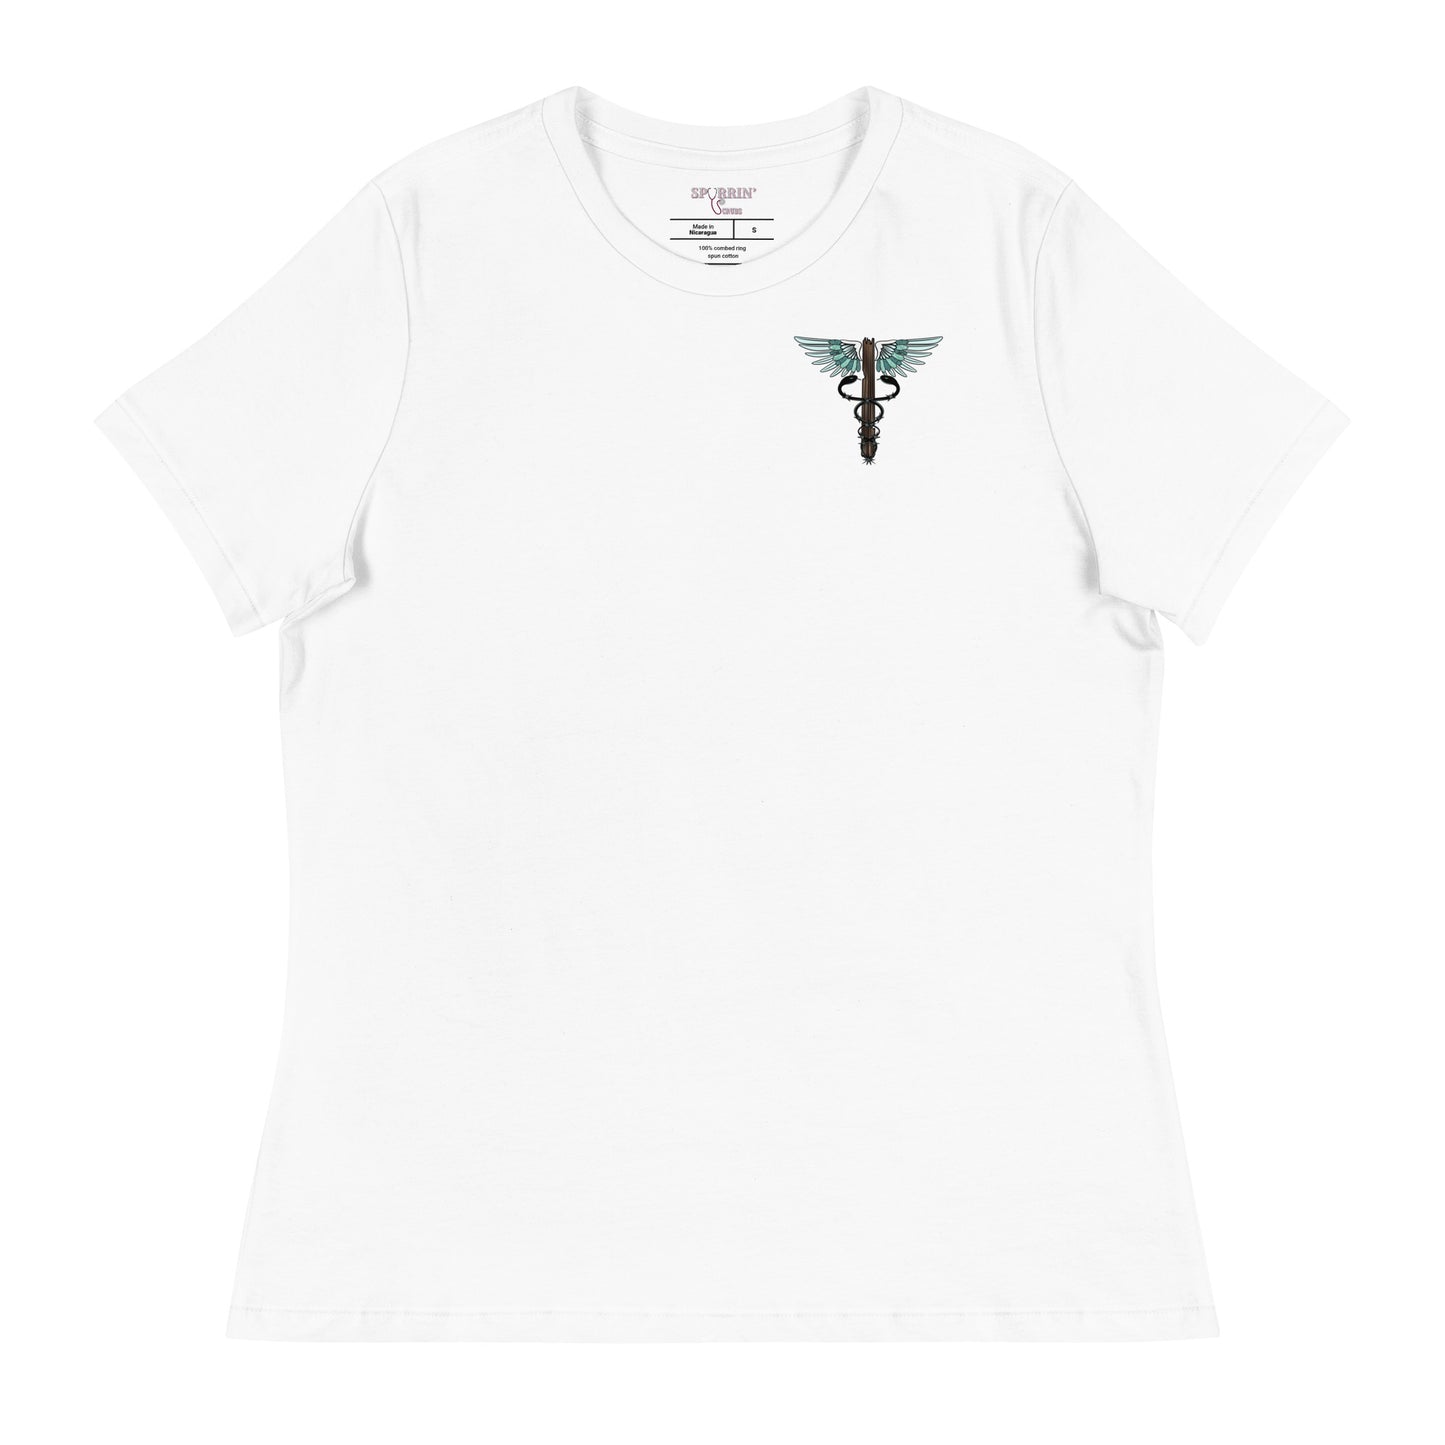 Cowgirl Caduceus- Women's Relaxed T-Shirt